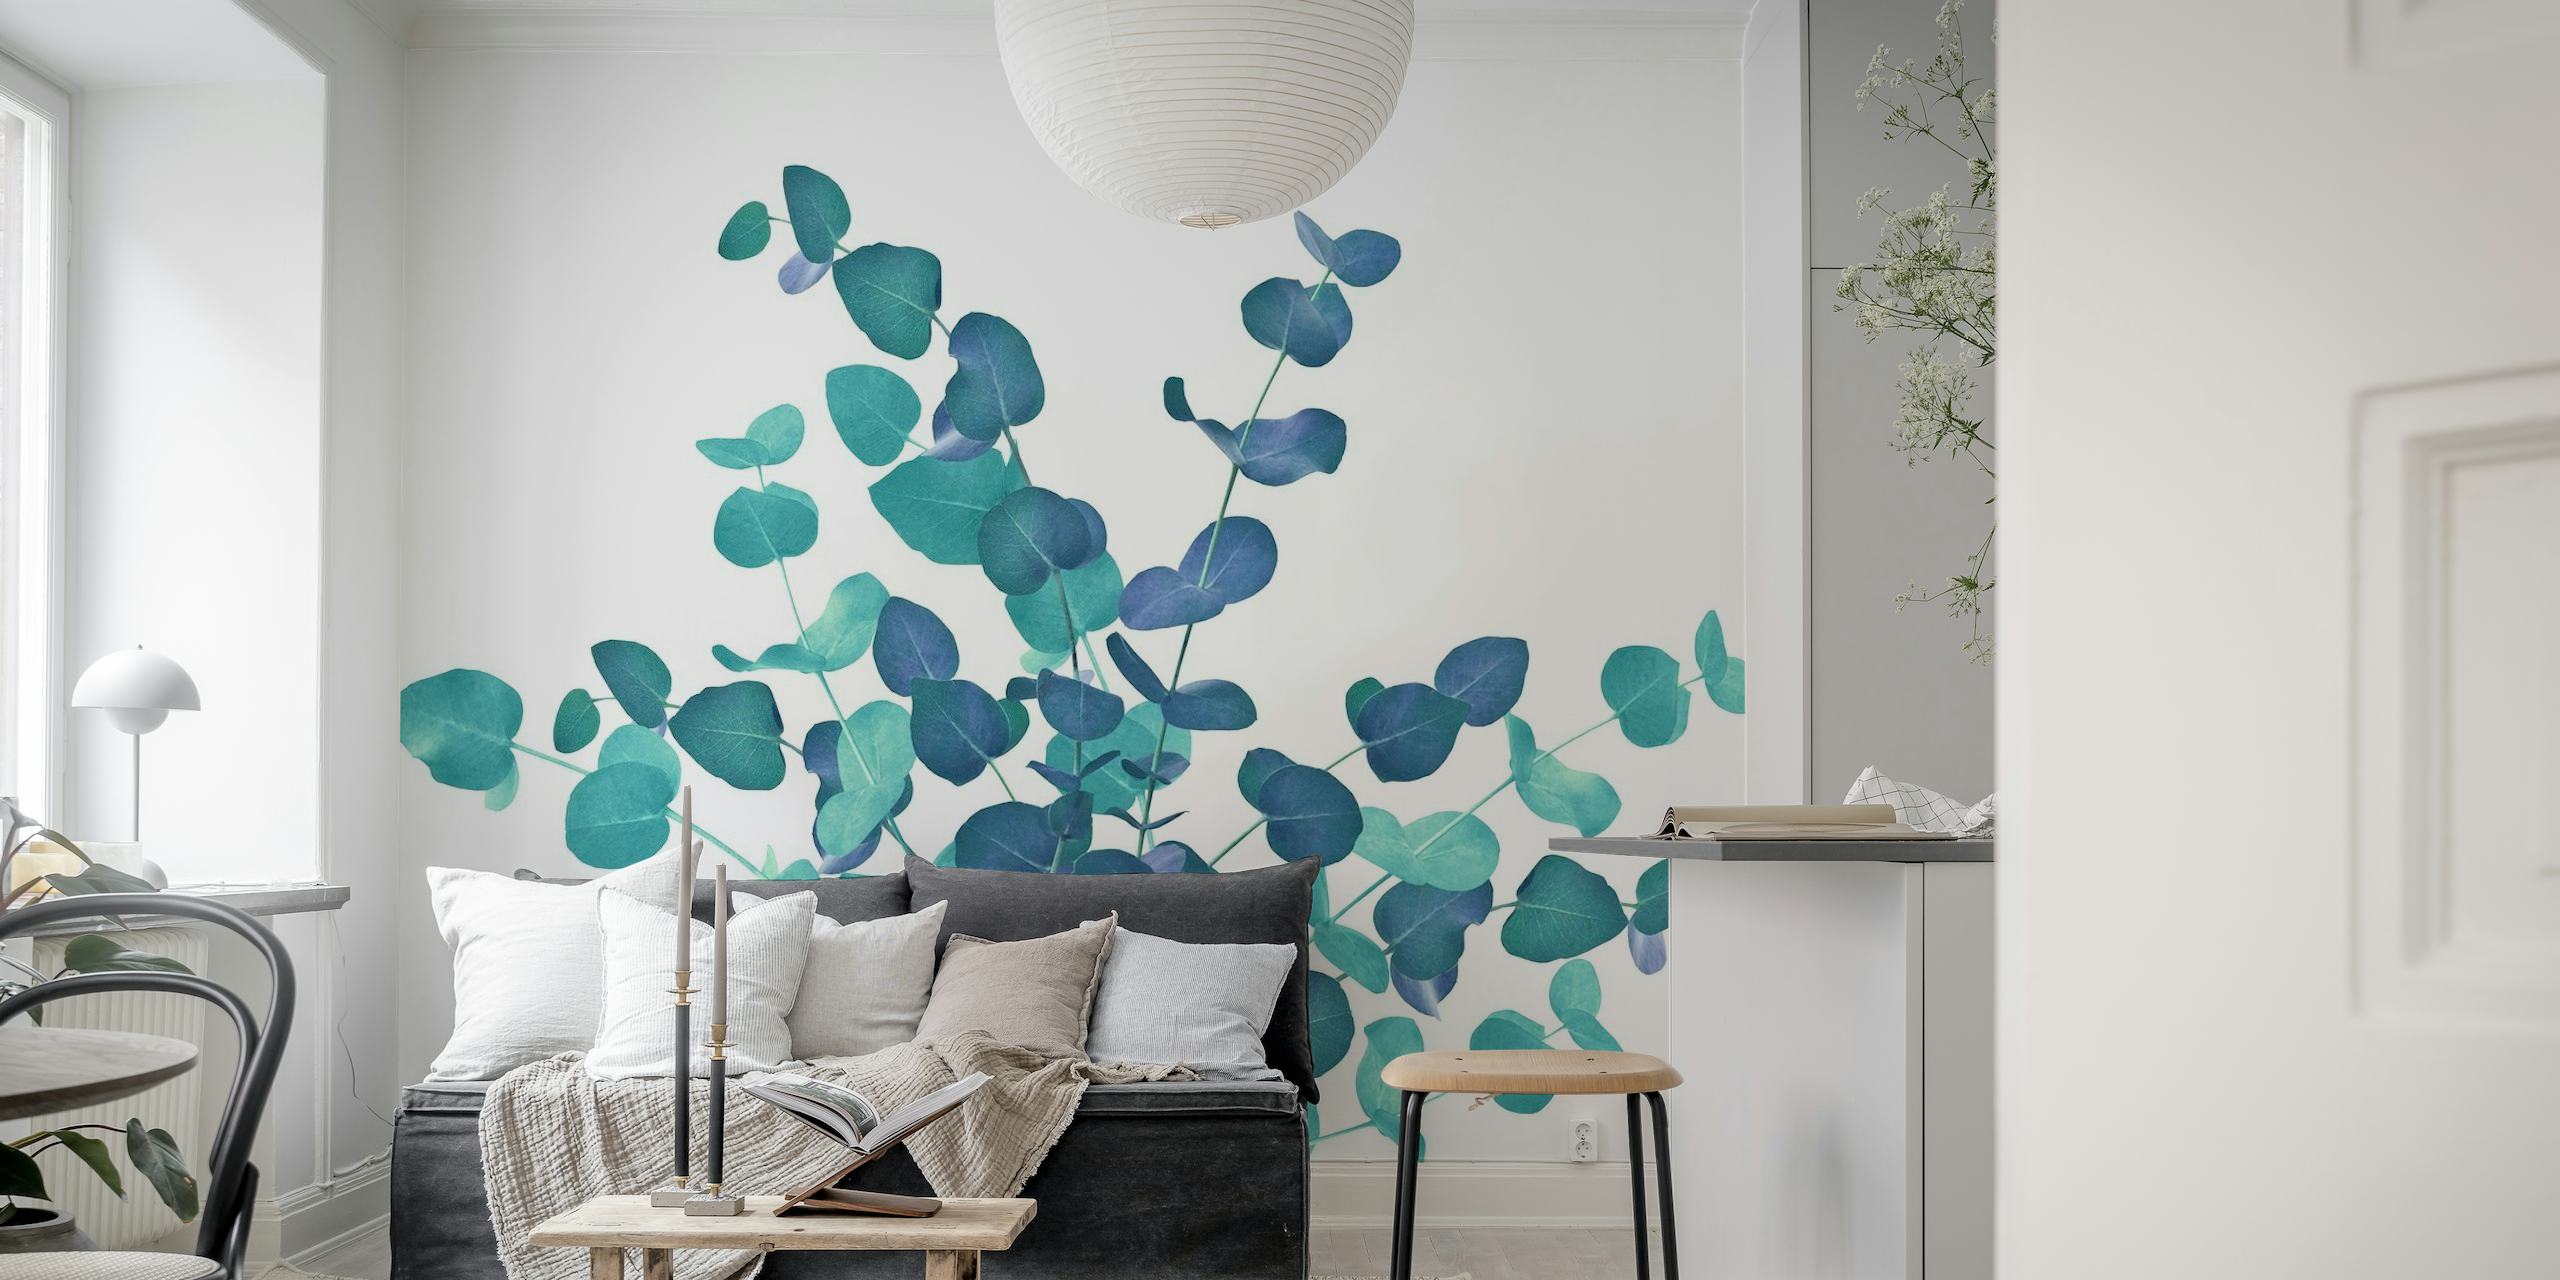 Wandbild mit Eukalyptusblättern in Blautönen, das eine heitere botanische Darstellung schafft